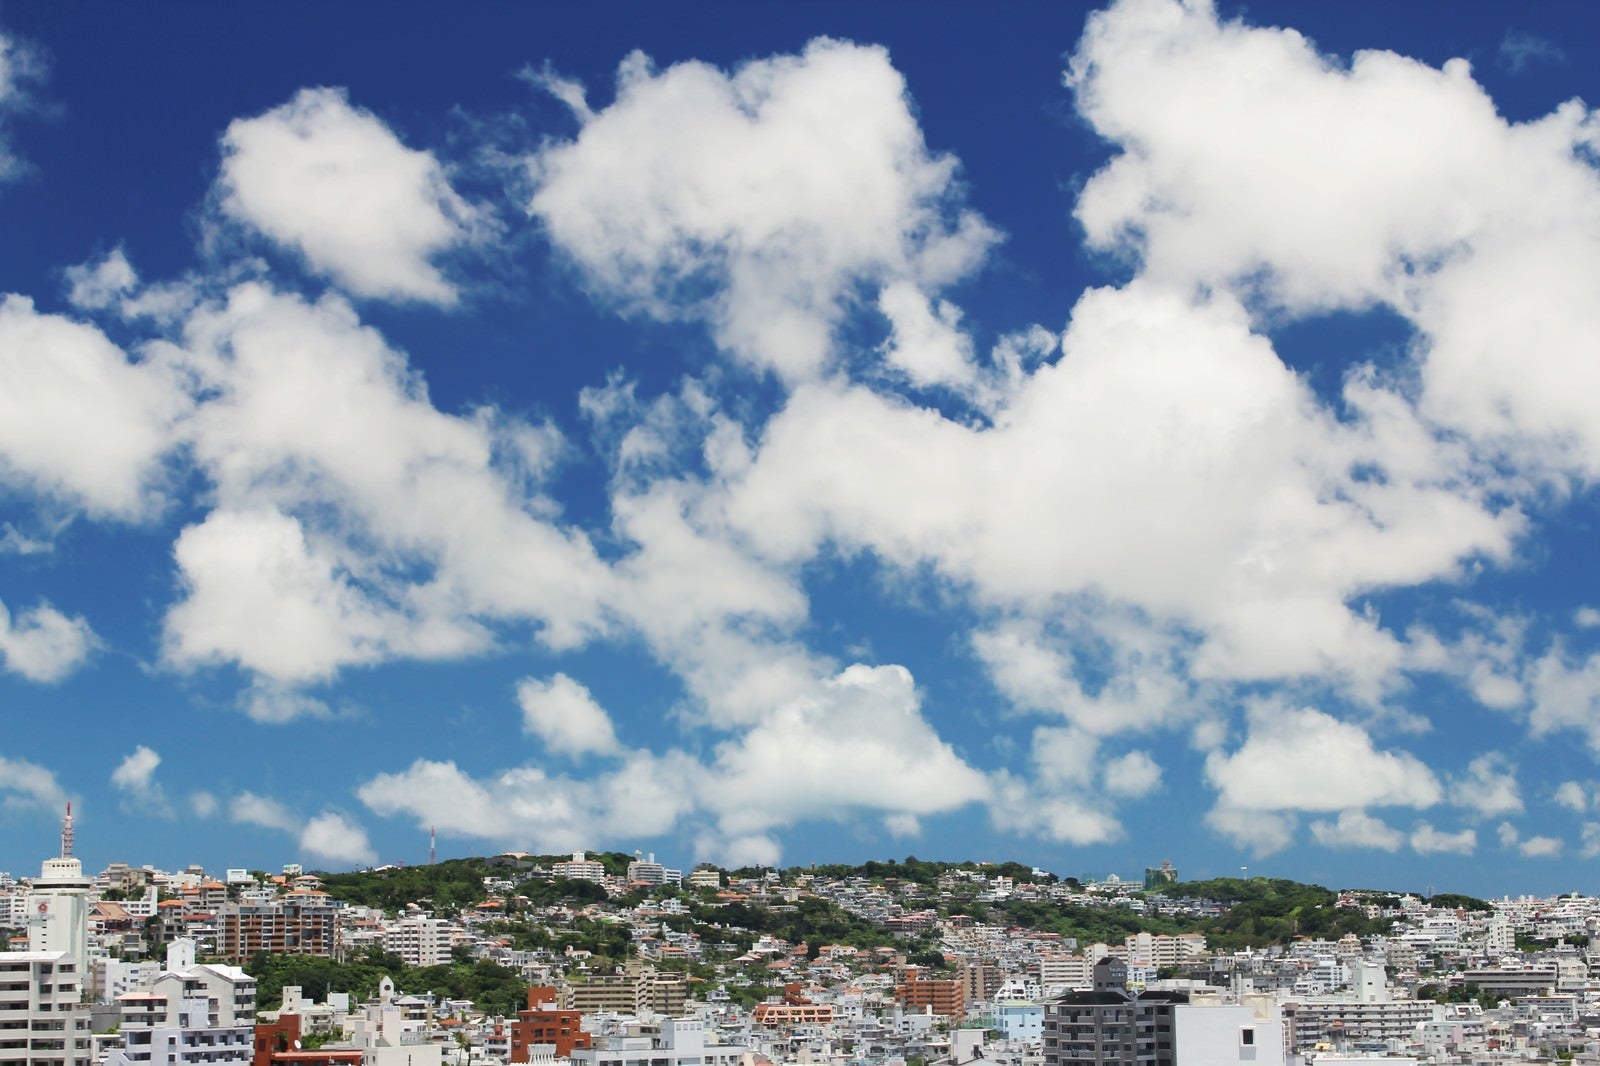 「屋上からの街並みと青空」の写真